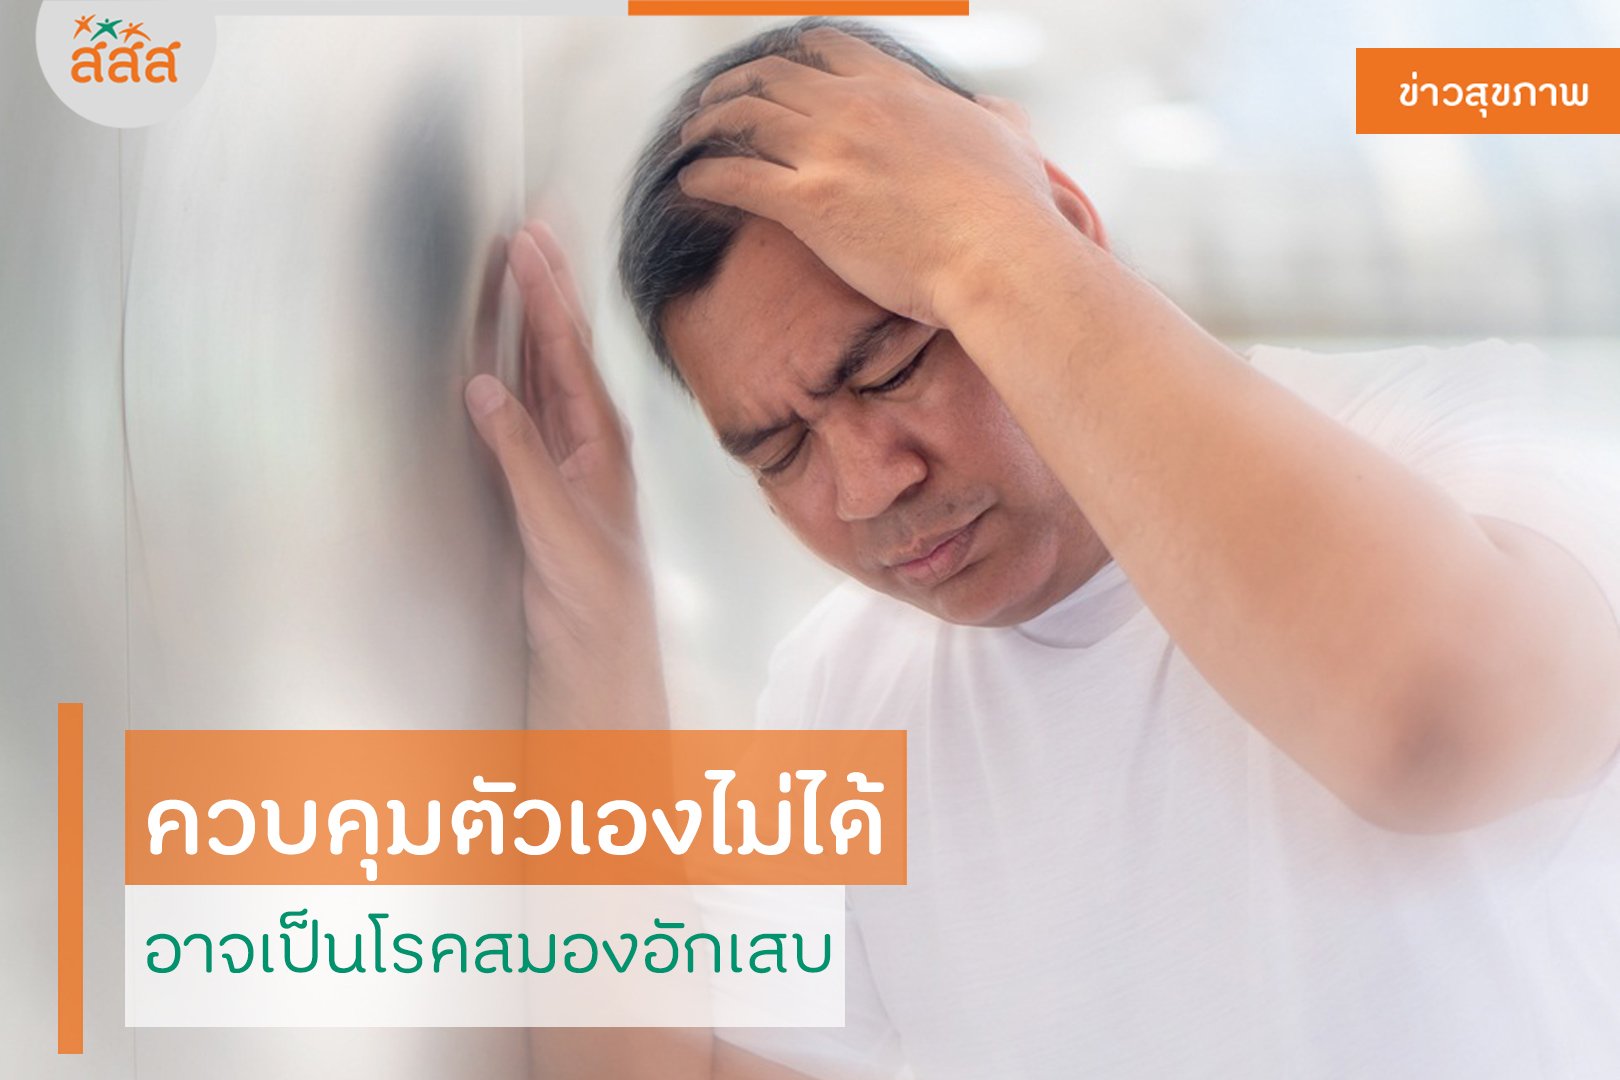 ควบคุมตัวเองไม่ได้ อาจเป็นโรคสมองอักเสบ thaihealth